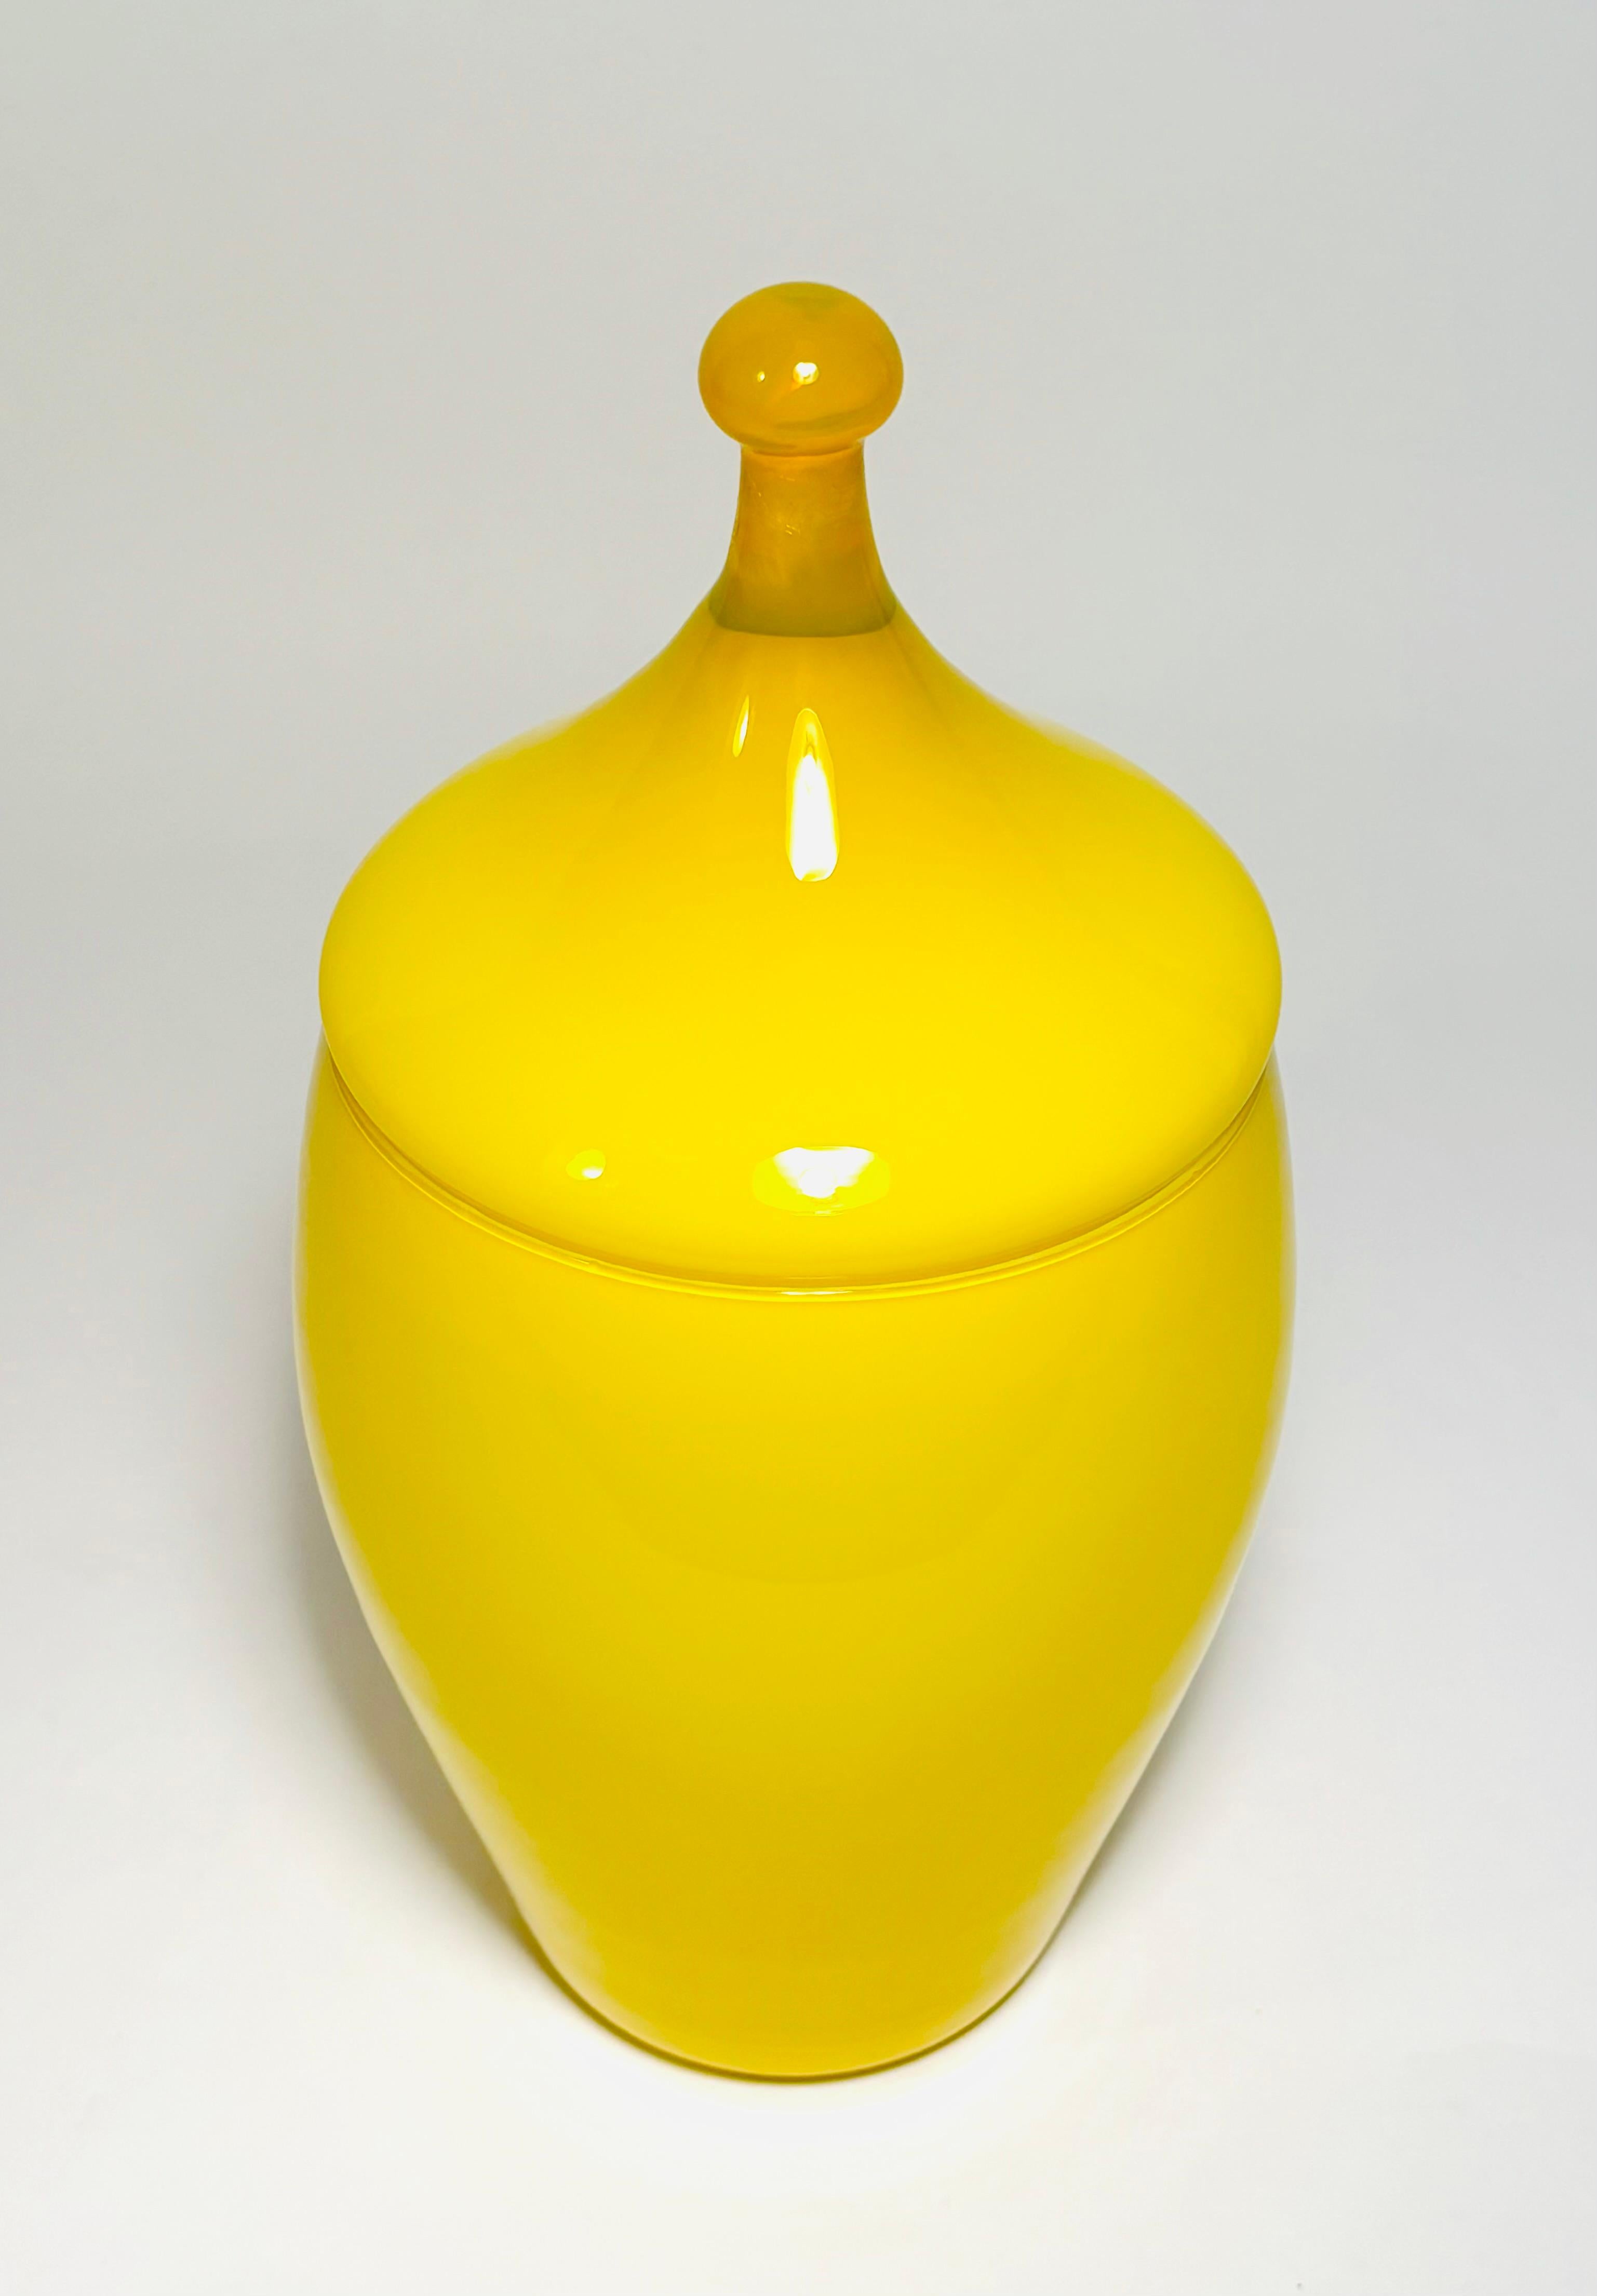 Vase en verre soufflé jaune soleil avec couvercle. Réalisée par l'un des souffleurs de verre de Florence (Italie), cette pièce est joliment moulée et peut être utilisée comme vase. En très bon état vintage.